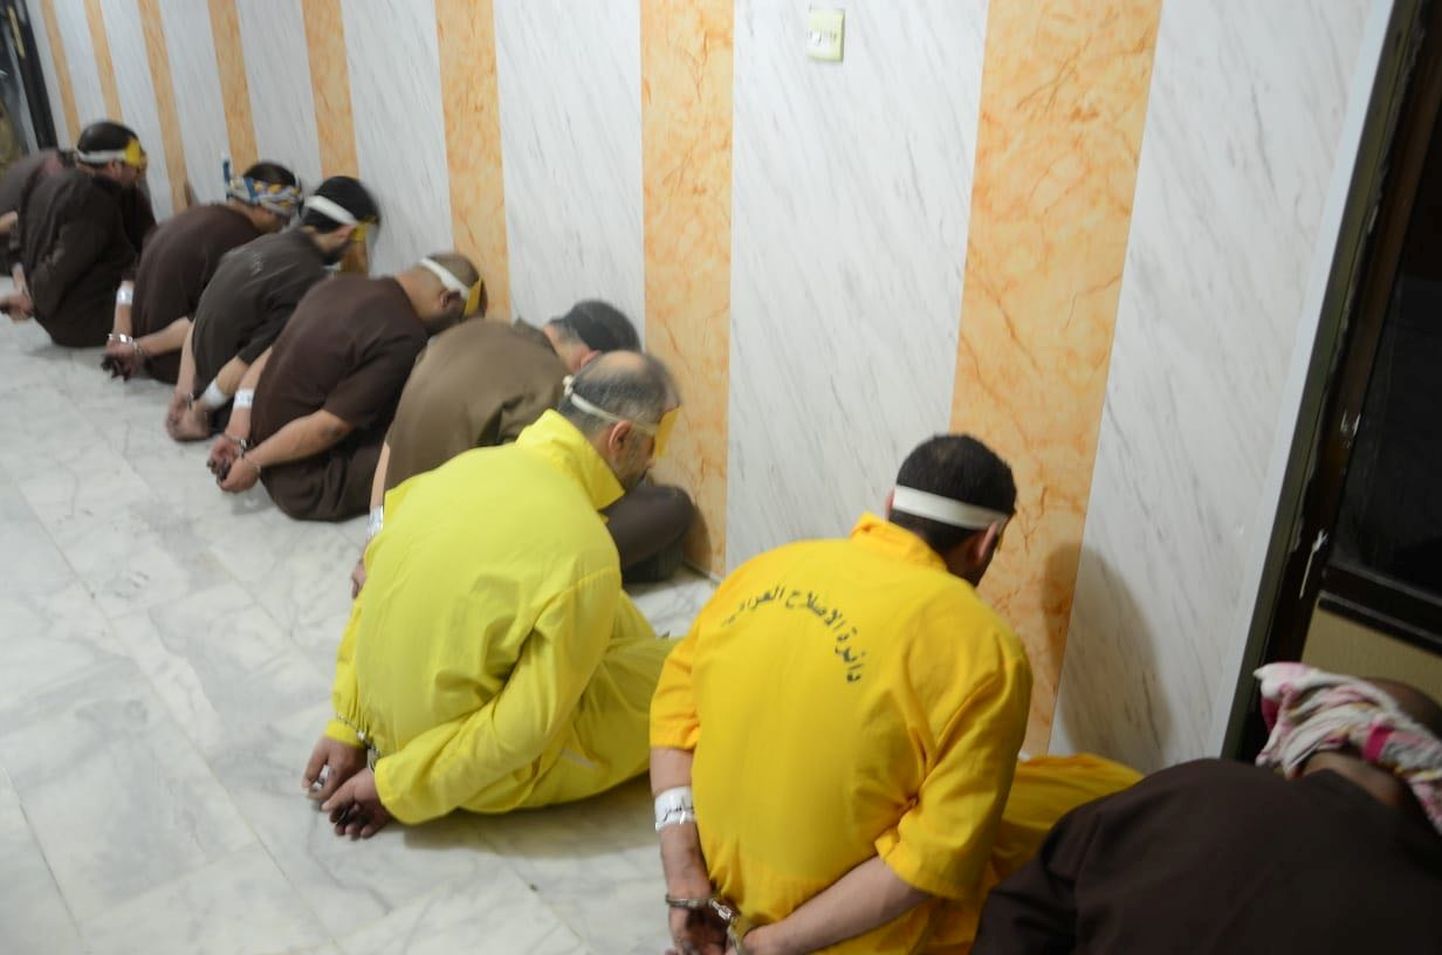 12 džihadisti vahetult enne hukkamist 28. juunil.